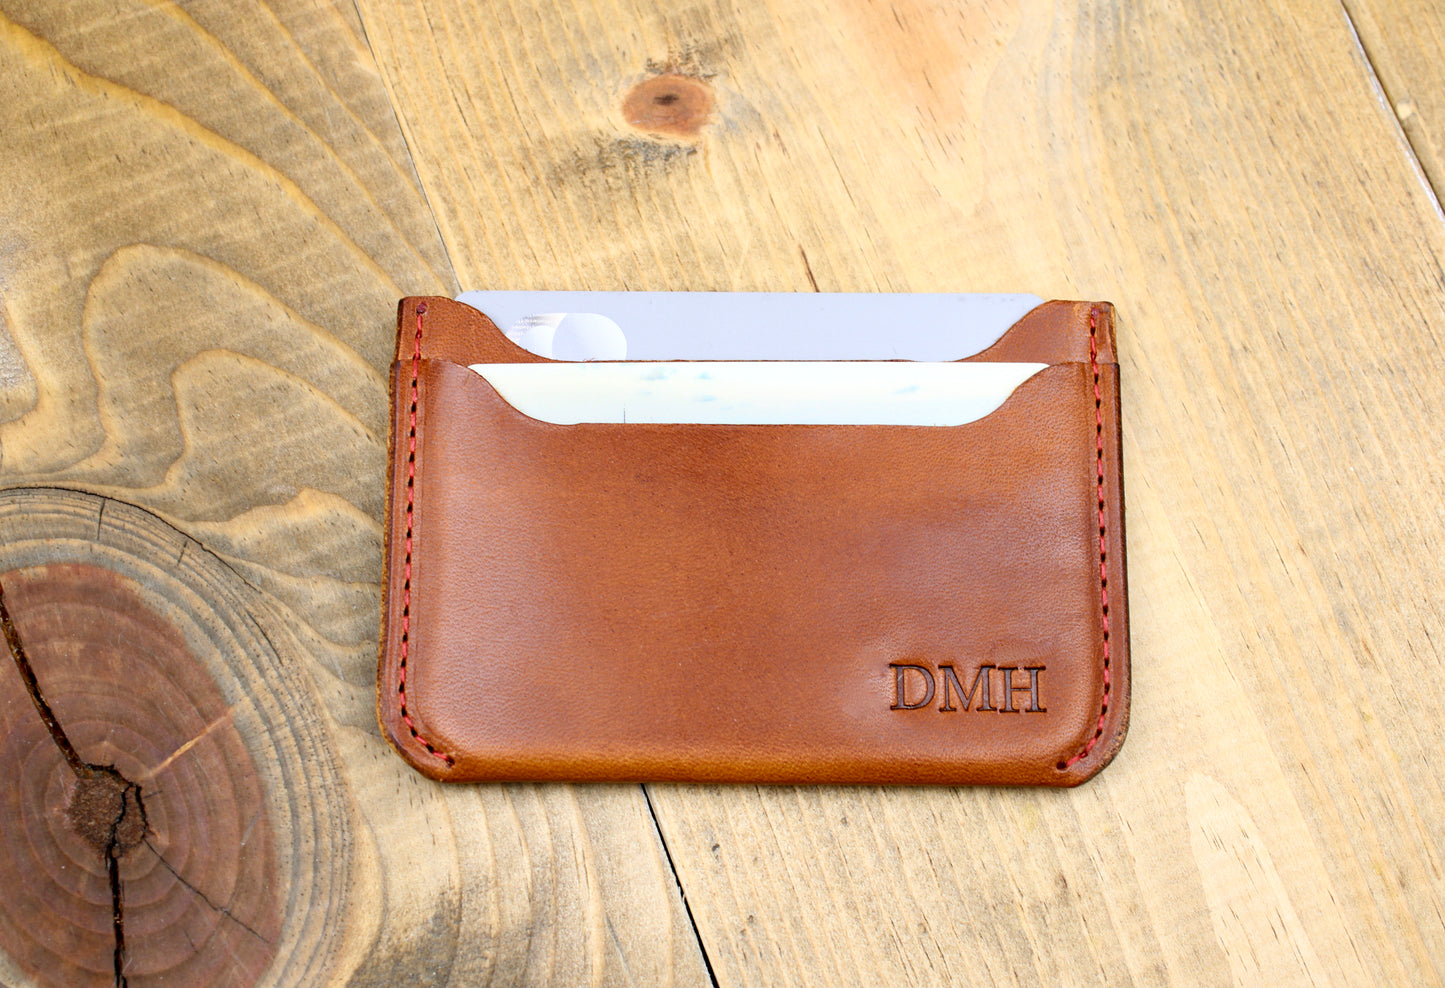 Men's Simple Handmade Slim Long Wallet